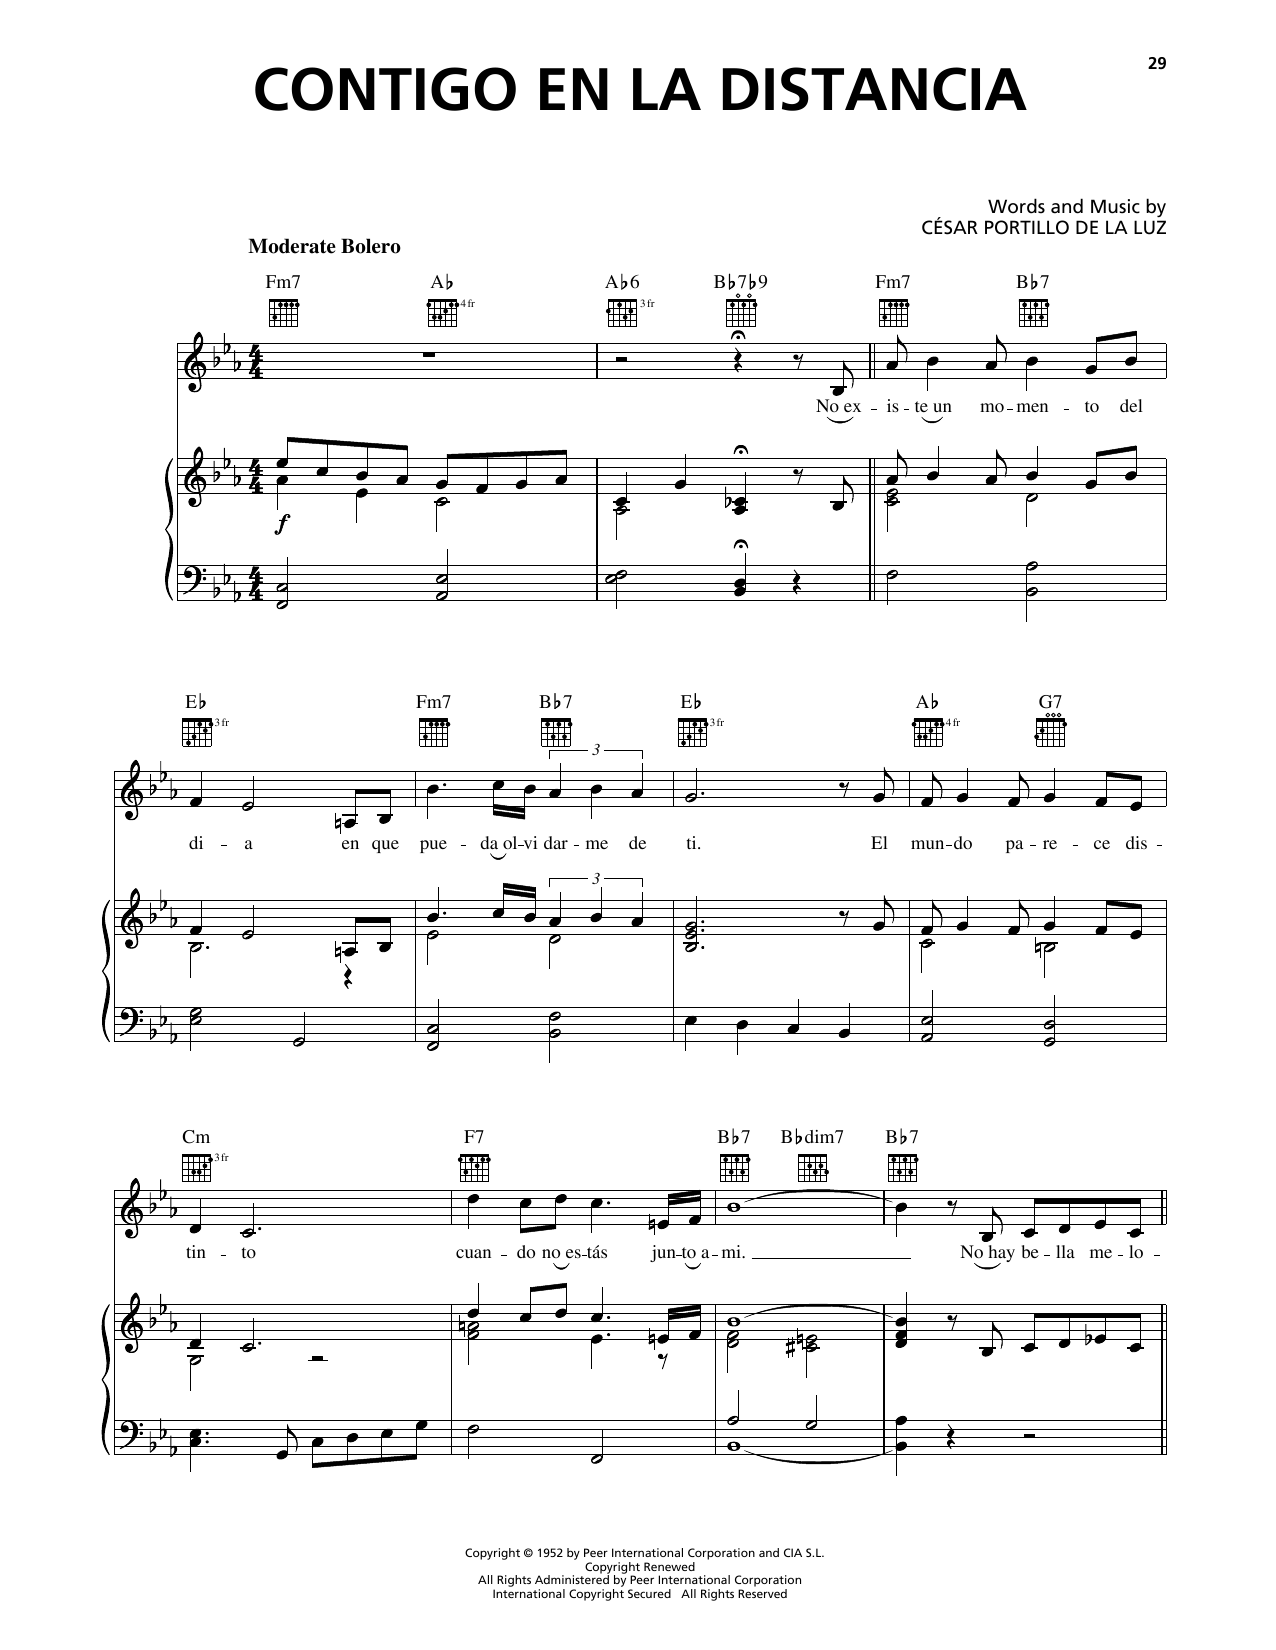 Luis Miguel Contigo En La Distancia sheet music notes printable PDF score